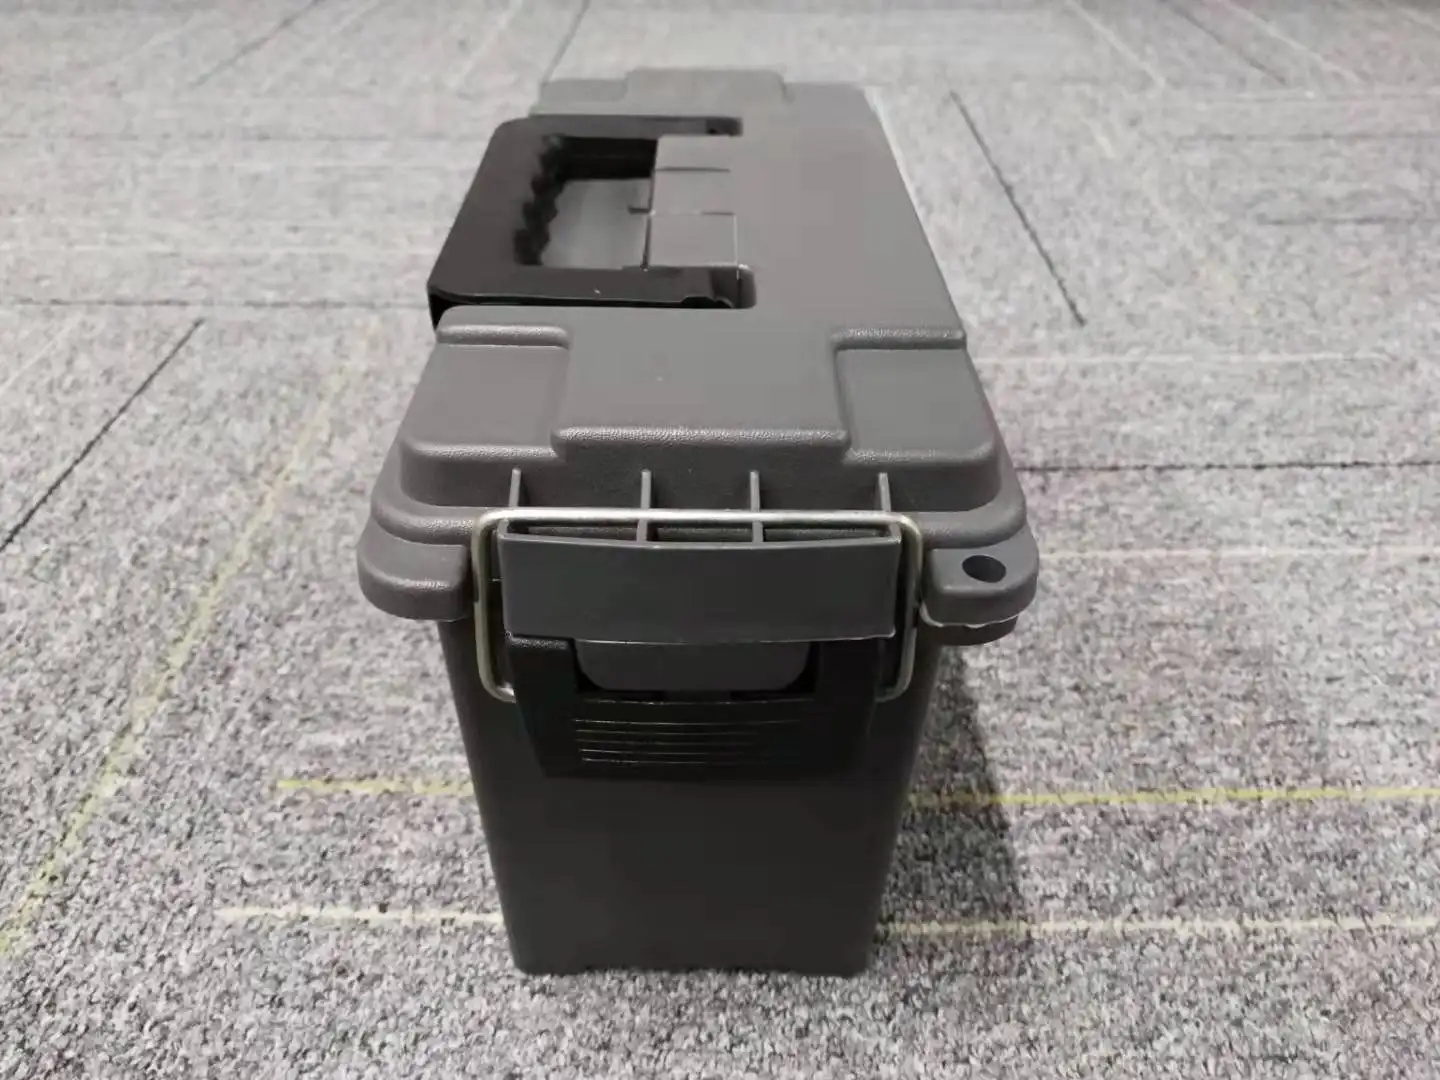 แบกฮาร์ดพลาสติกกระสุนกรณีกล่องสีเขียวสีดำกระสุนสามารถ